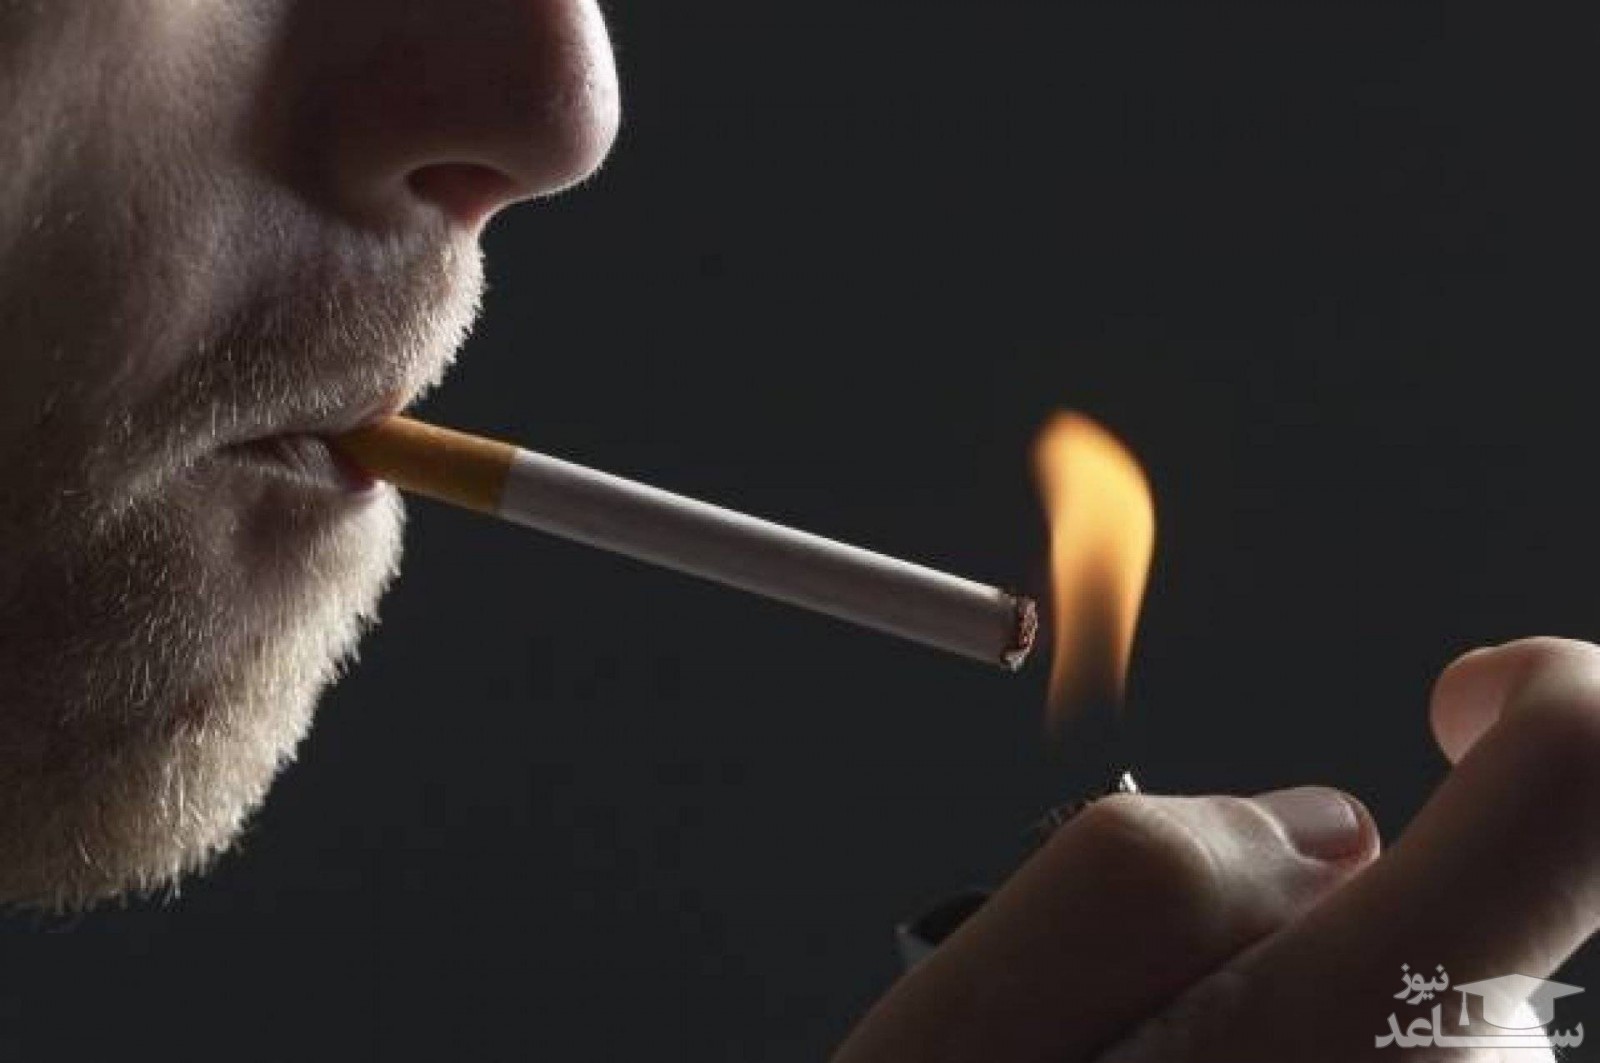 سیگار کشیدن چه تاثیری بر عملکرد رابطه جنسی دارد؟